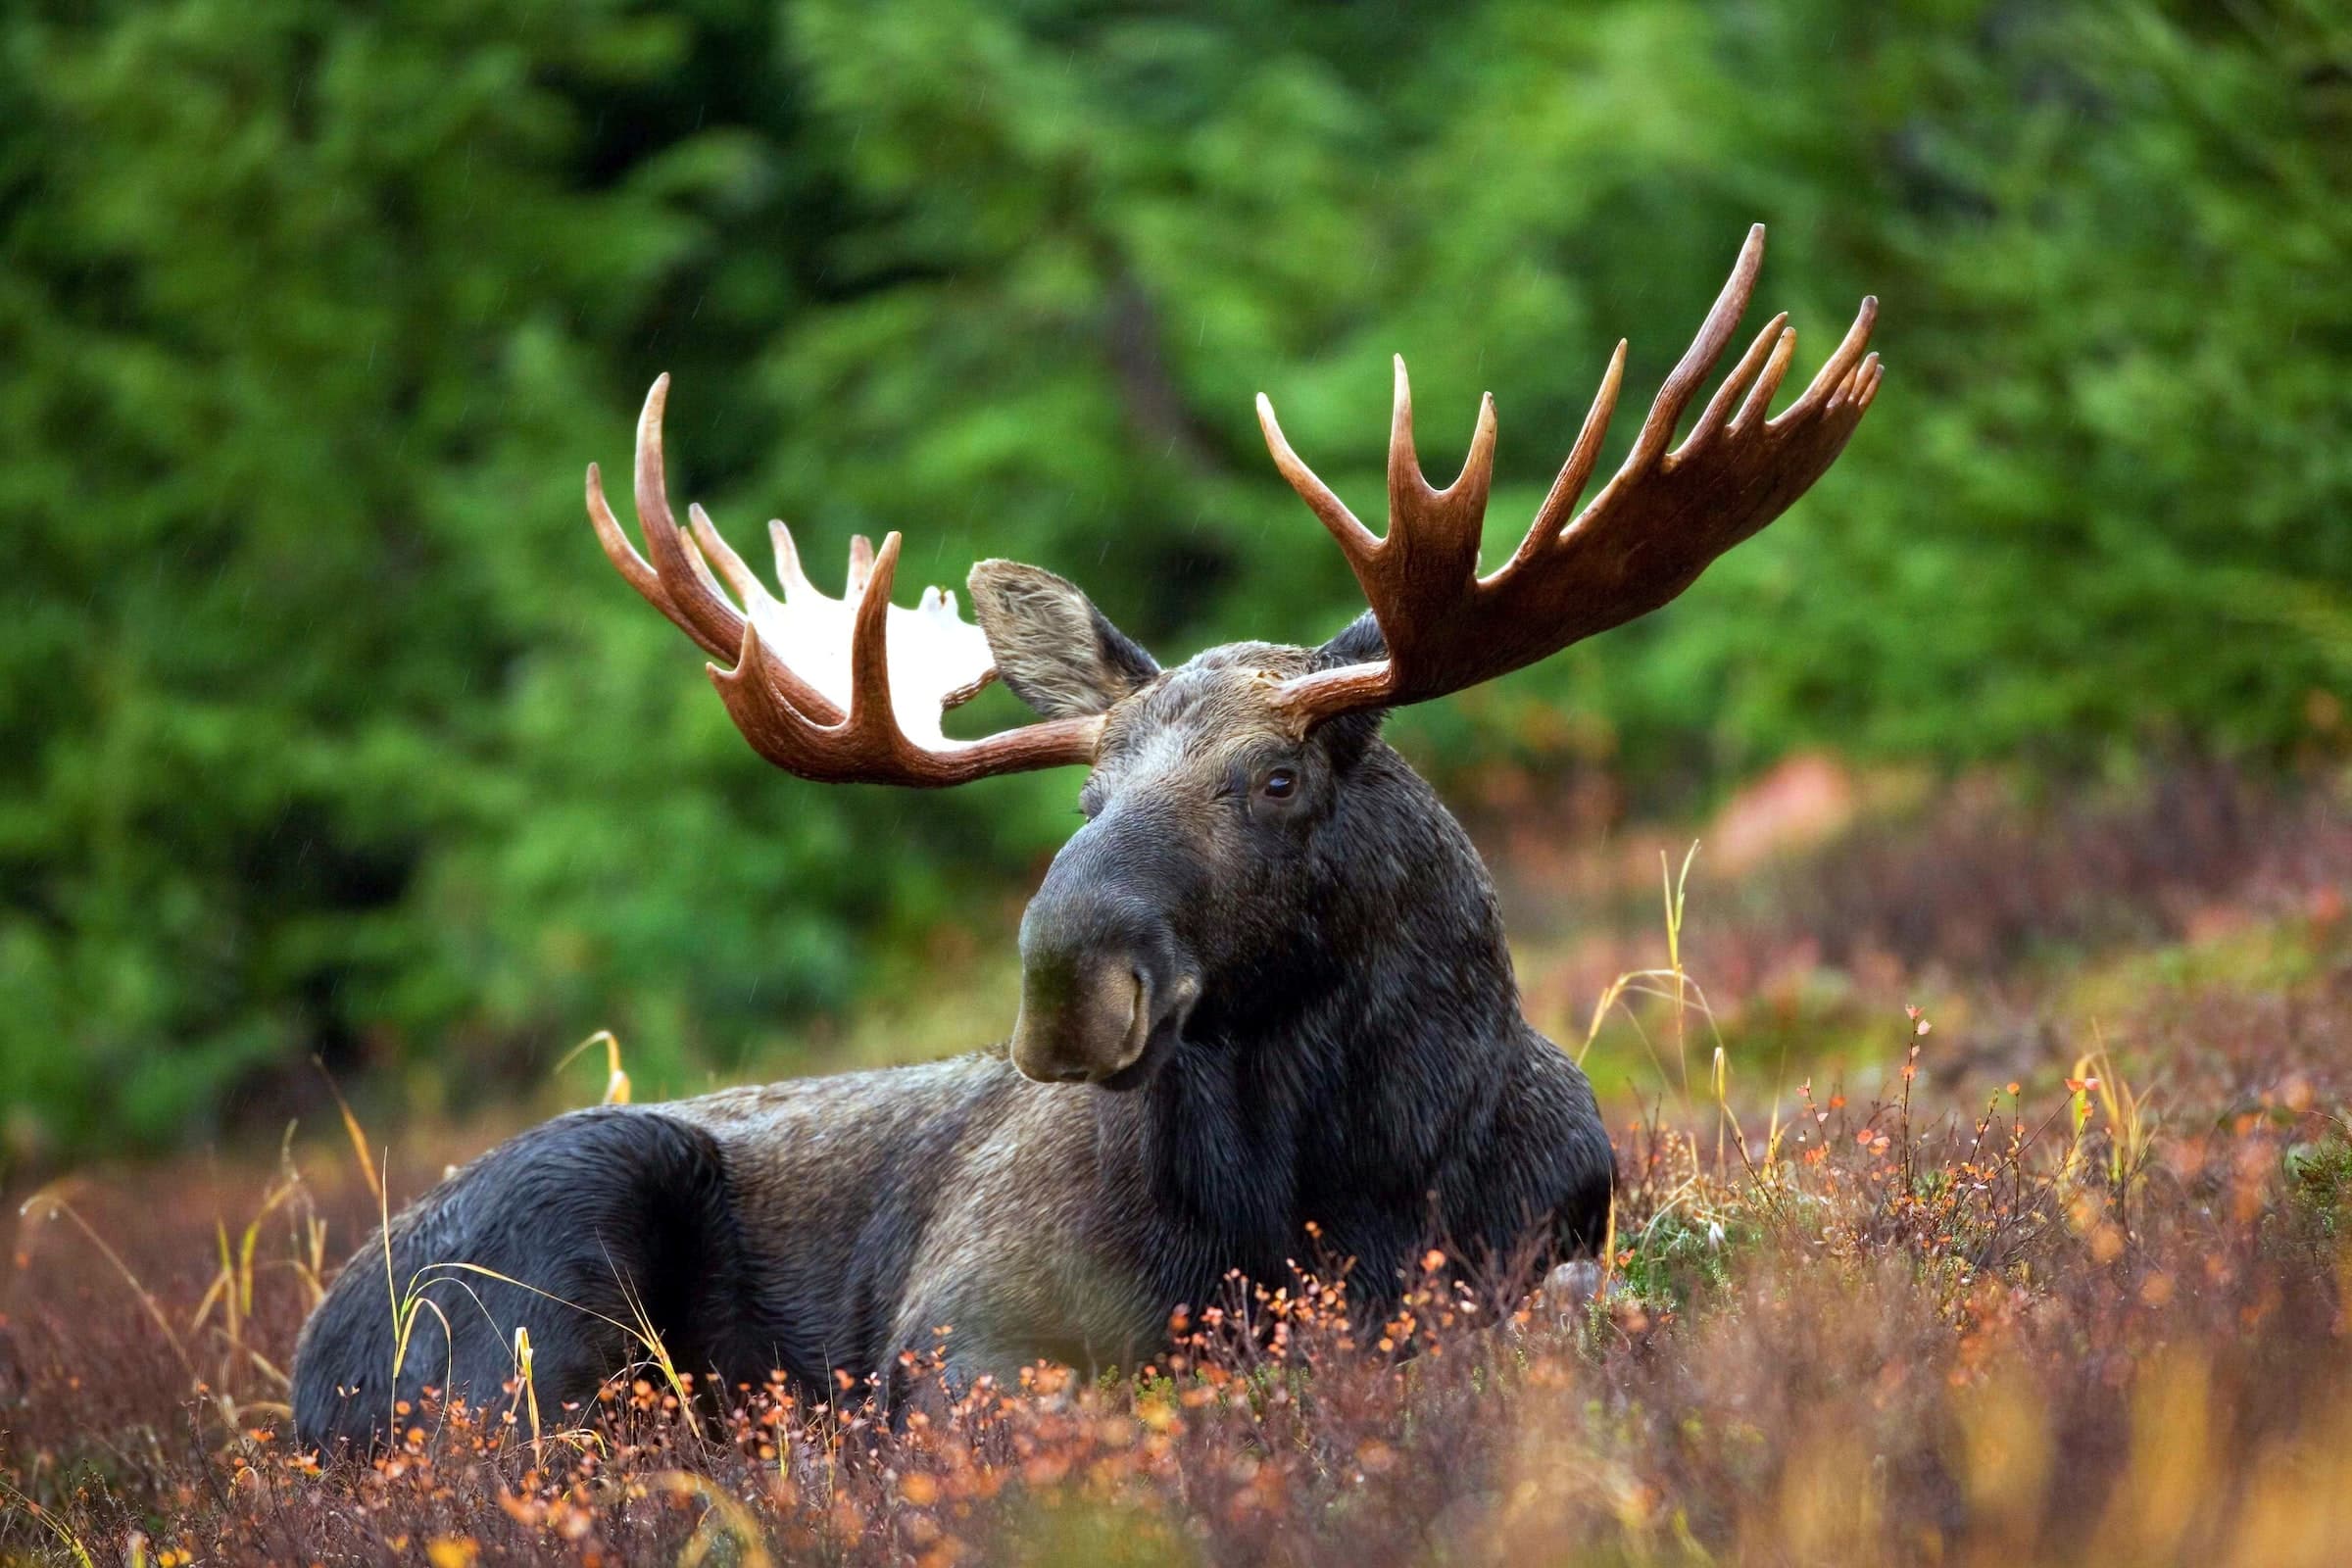 Black moose in field